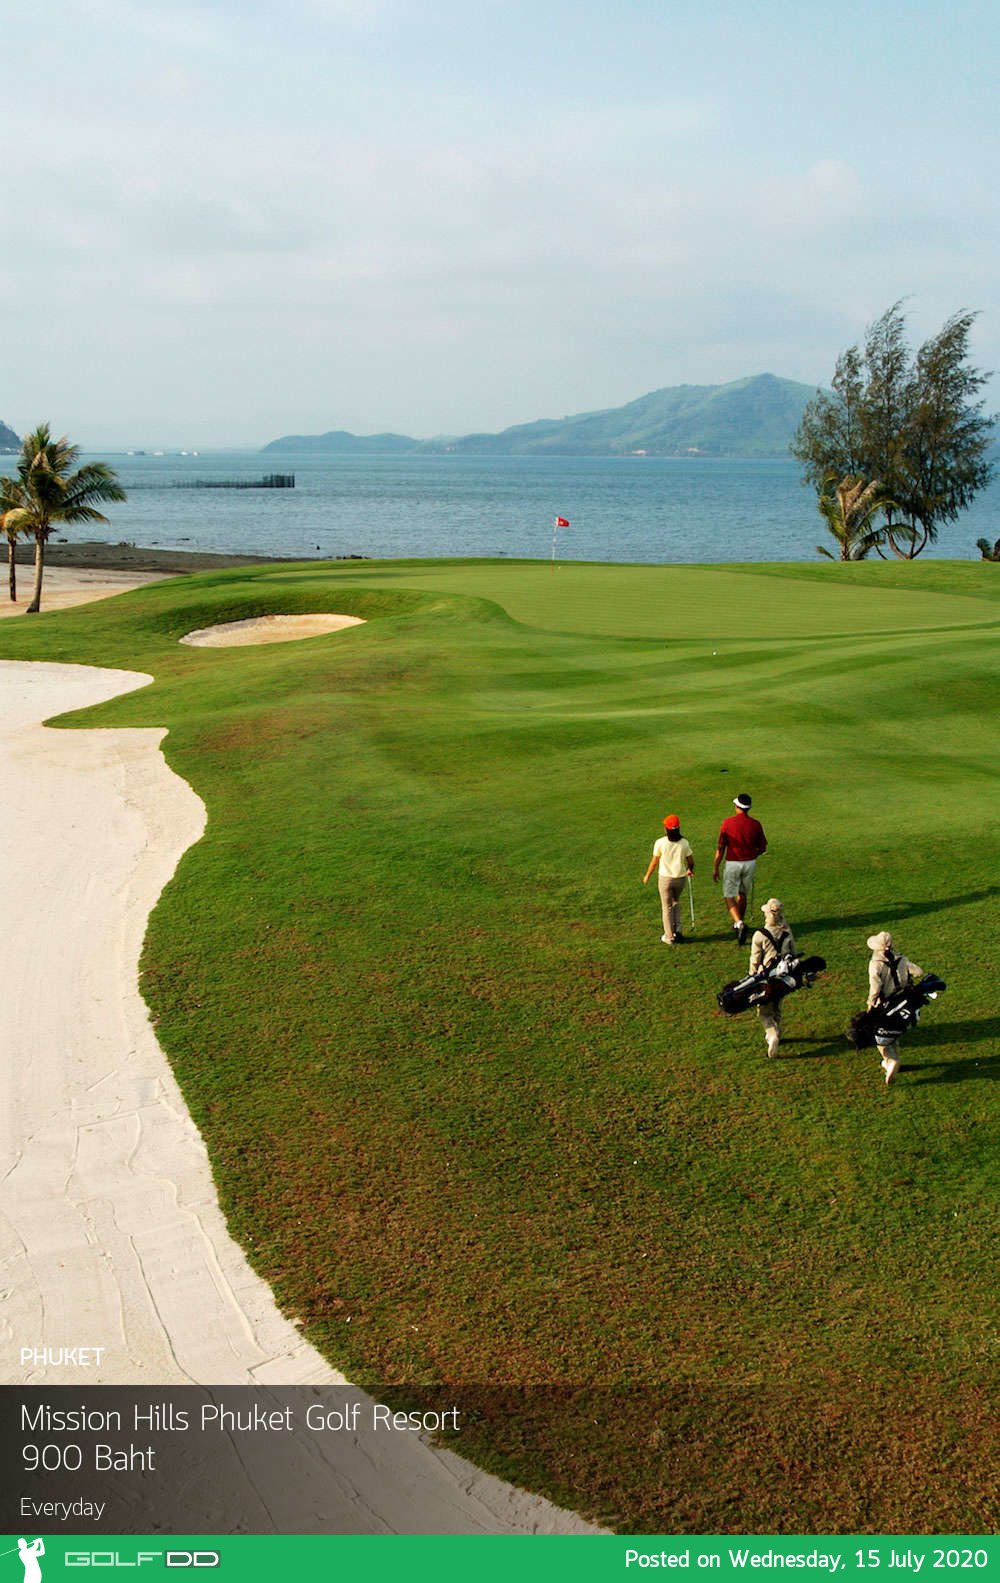 โปรใหม่โปรแรงๆกรีนฟีหลักร้อยคุณภาพหลักพันสนามสวยที่พักดีต้องที่นี้เลย Mission Hills Phuket Golf Resort 